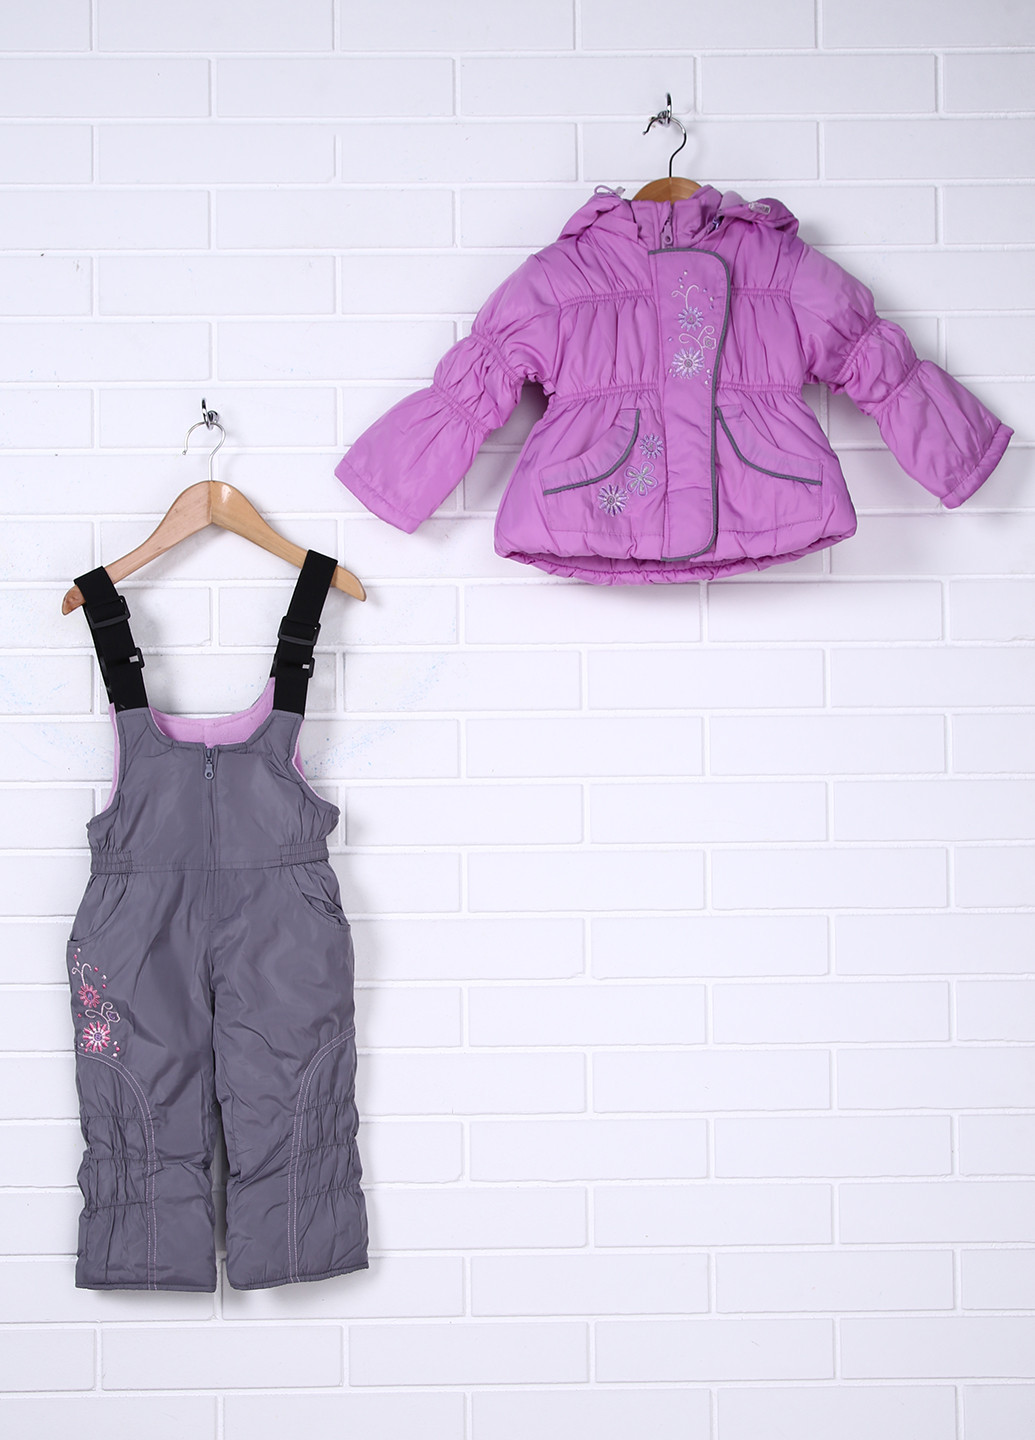 Фіолетовий зимній комплект (куртка, комбинезон) Aimico